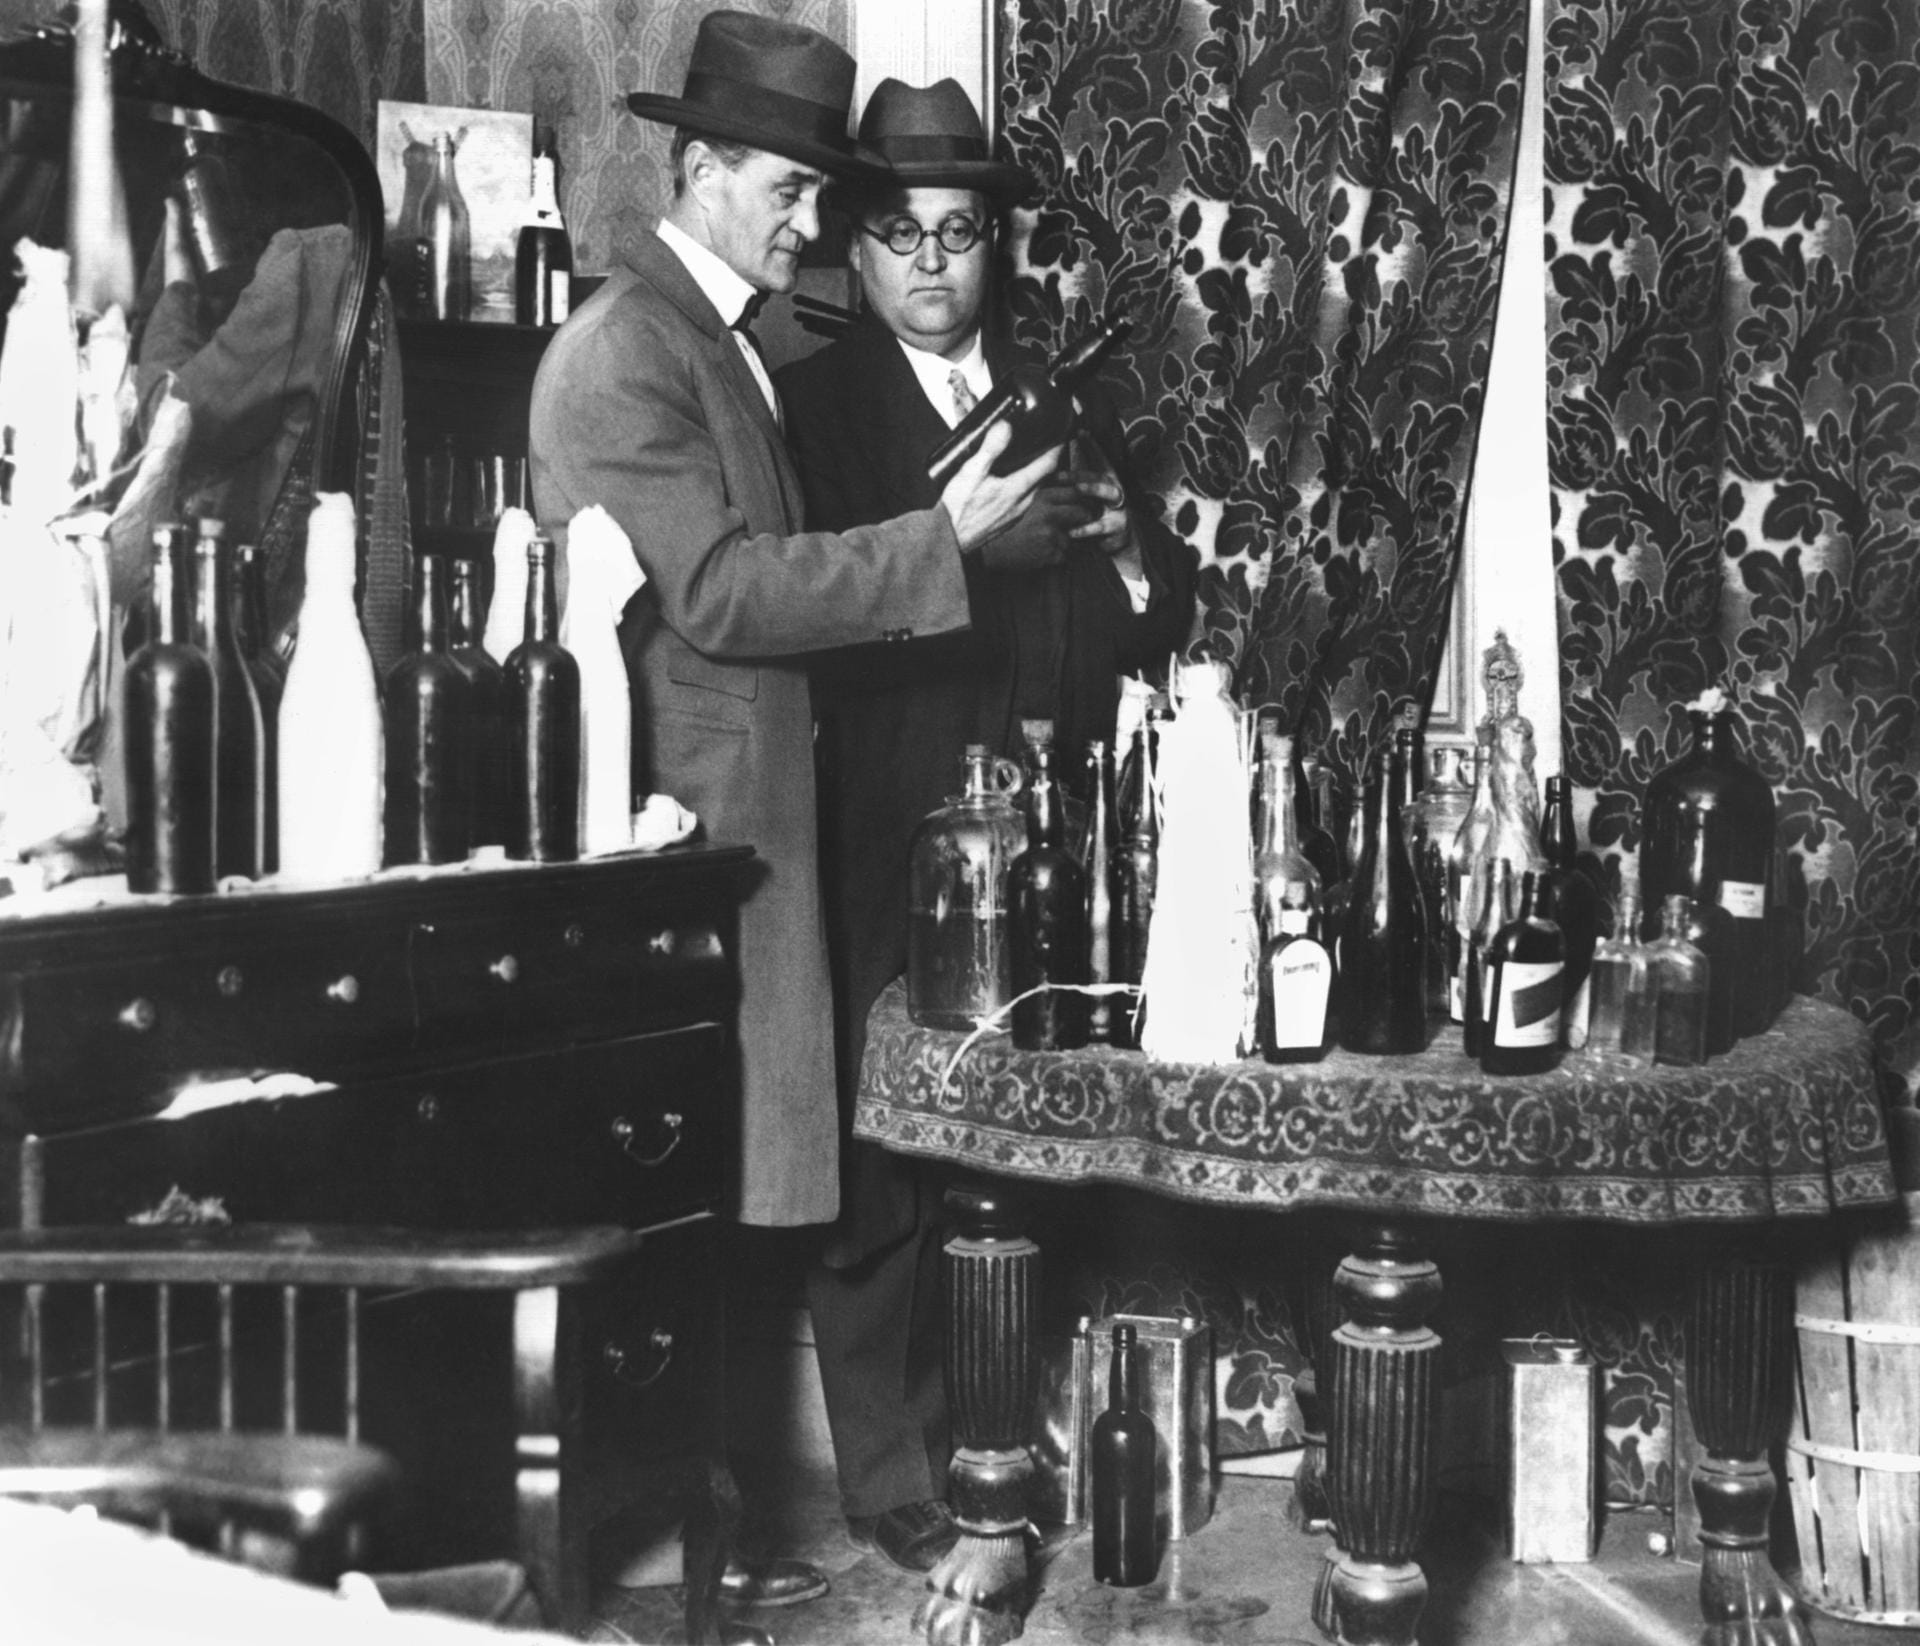 Allerdings wollten sich viele Amerikaner das Trinken nicht verbieten lassen. Illegale Kneipen, "Speakeasies", zu Deutsch "Flüsterkneipen", entstanden zuhauf. Mit Razzien, wie dieser im Jahr 1925, versuchten die Behörden, die Speakeasies aufzuspüren und stillzulegen. Meist vergeblich. Statt den Konsum von Alkohol einzudämmen, hatte die Prohibition den gegenteiligen Effekt.